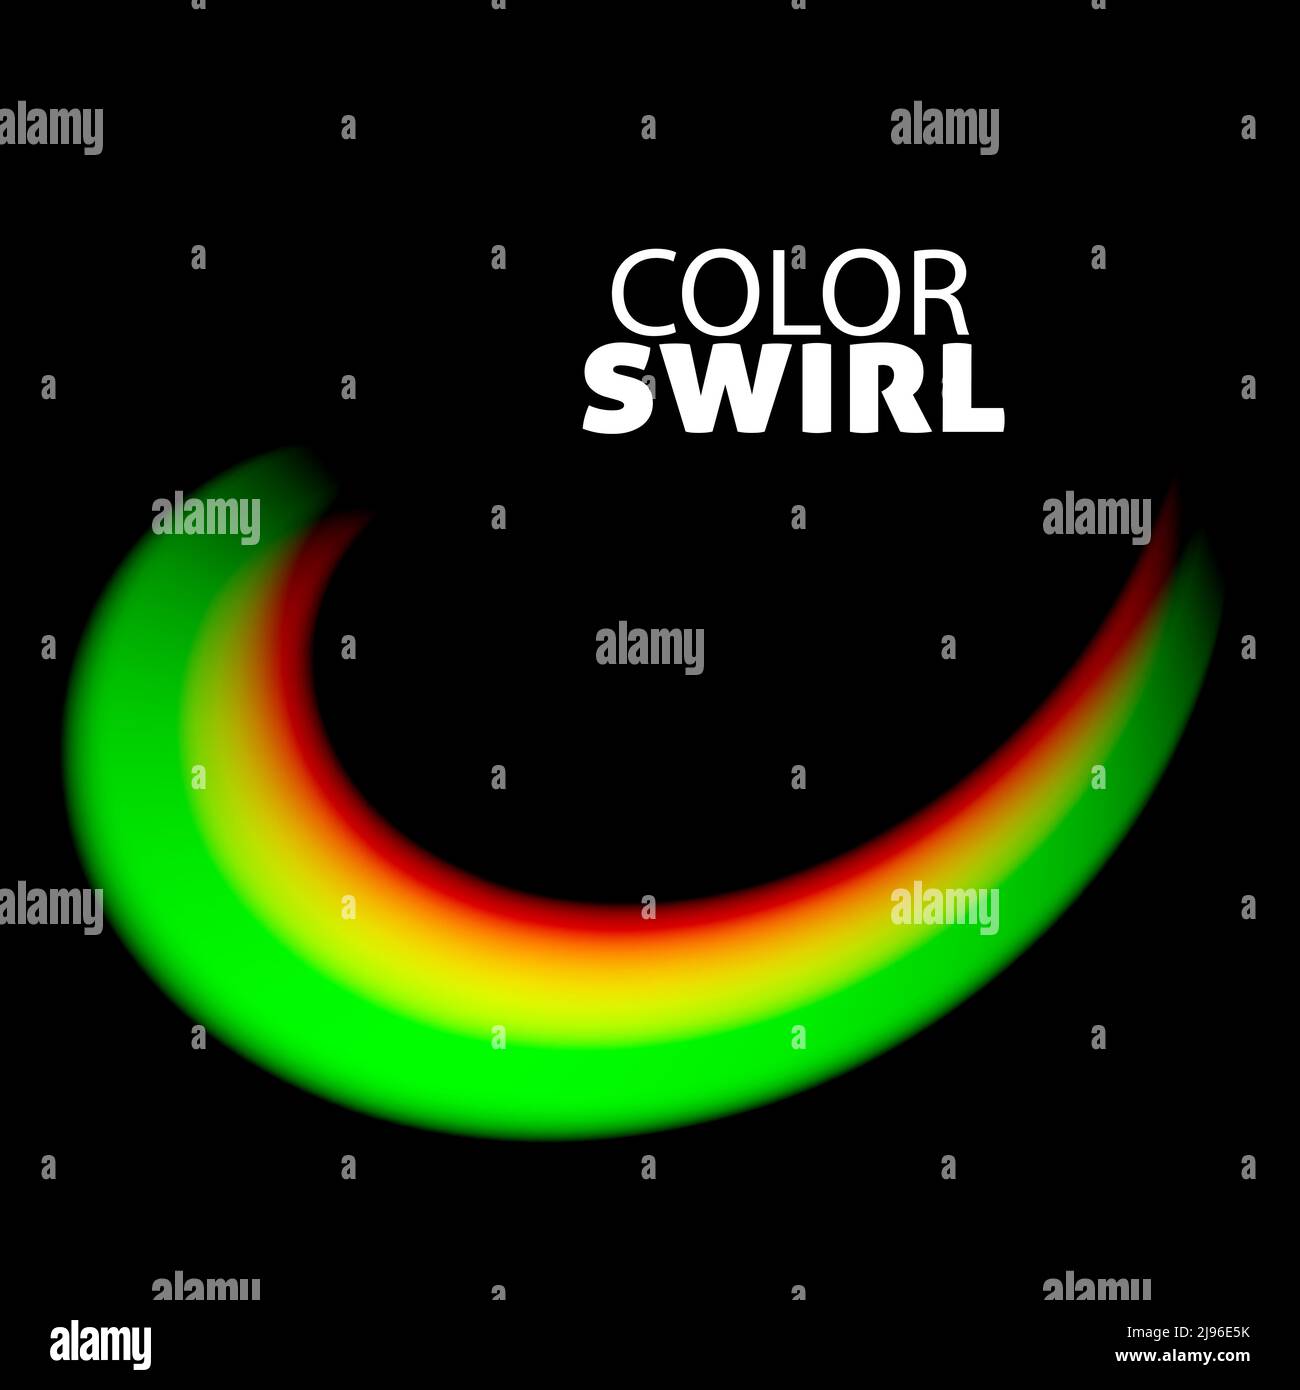 Farbwirbel. Unscharfer, mehrfarbiger Pinselstrich in grünen, gelben und roten Farben auf schwarzem Hintergrund. Farbenfrohe Vektorgrafiken Stock Vektor